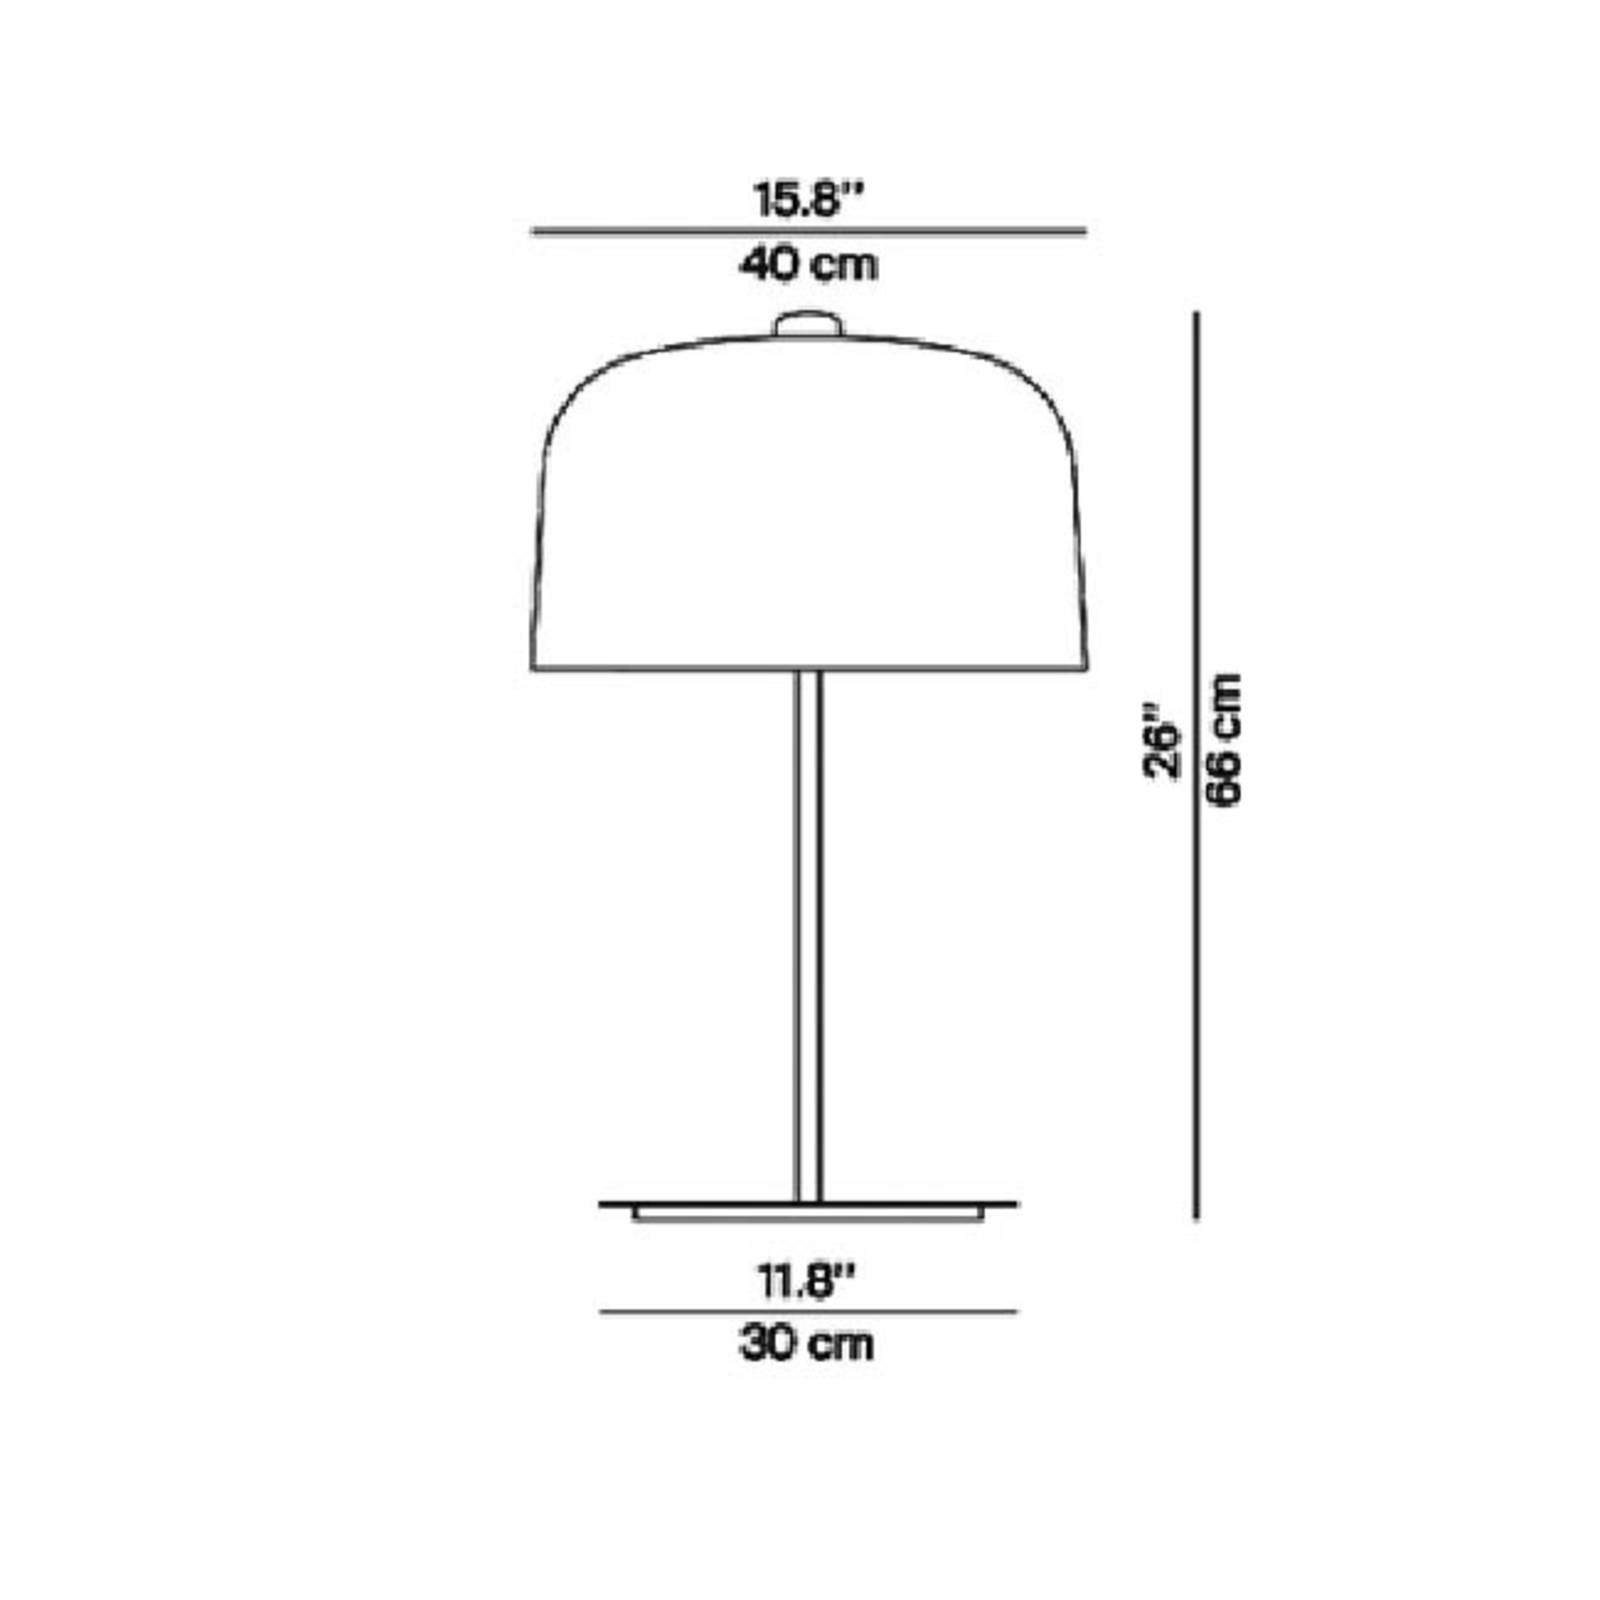 Luceplan Zile bordlampe, duegrå, højde 66 cm